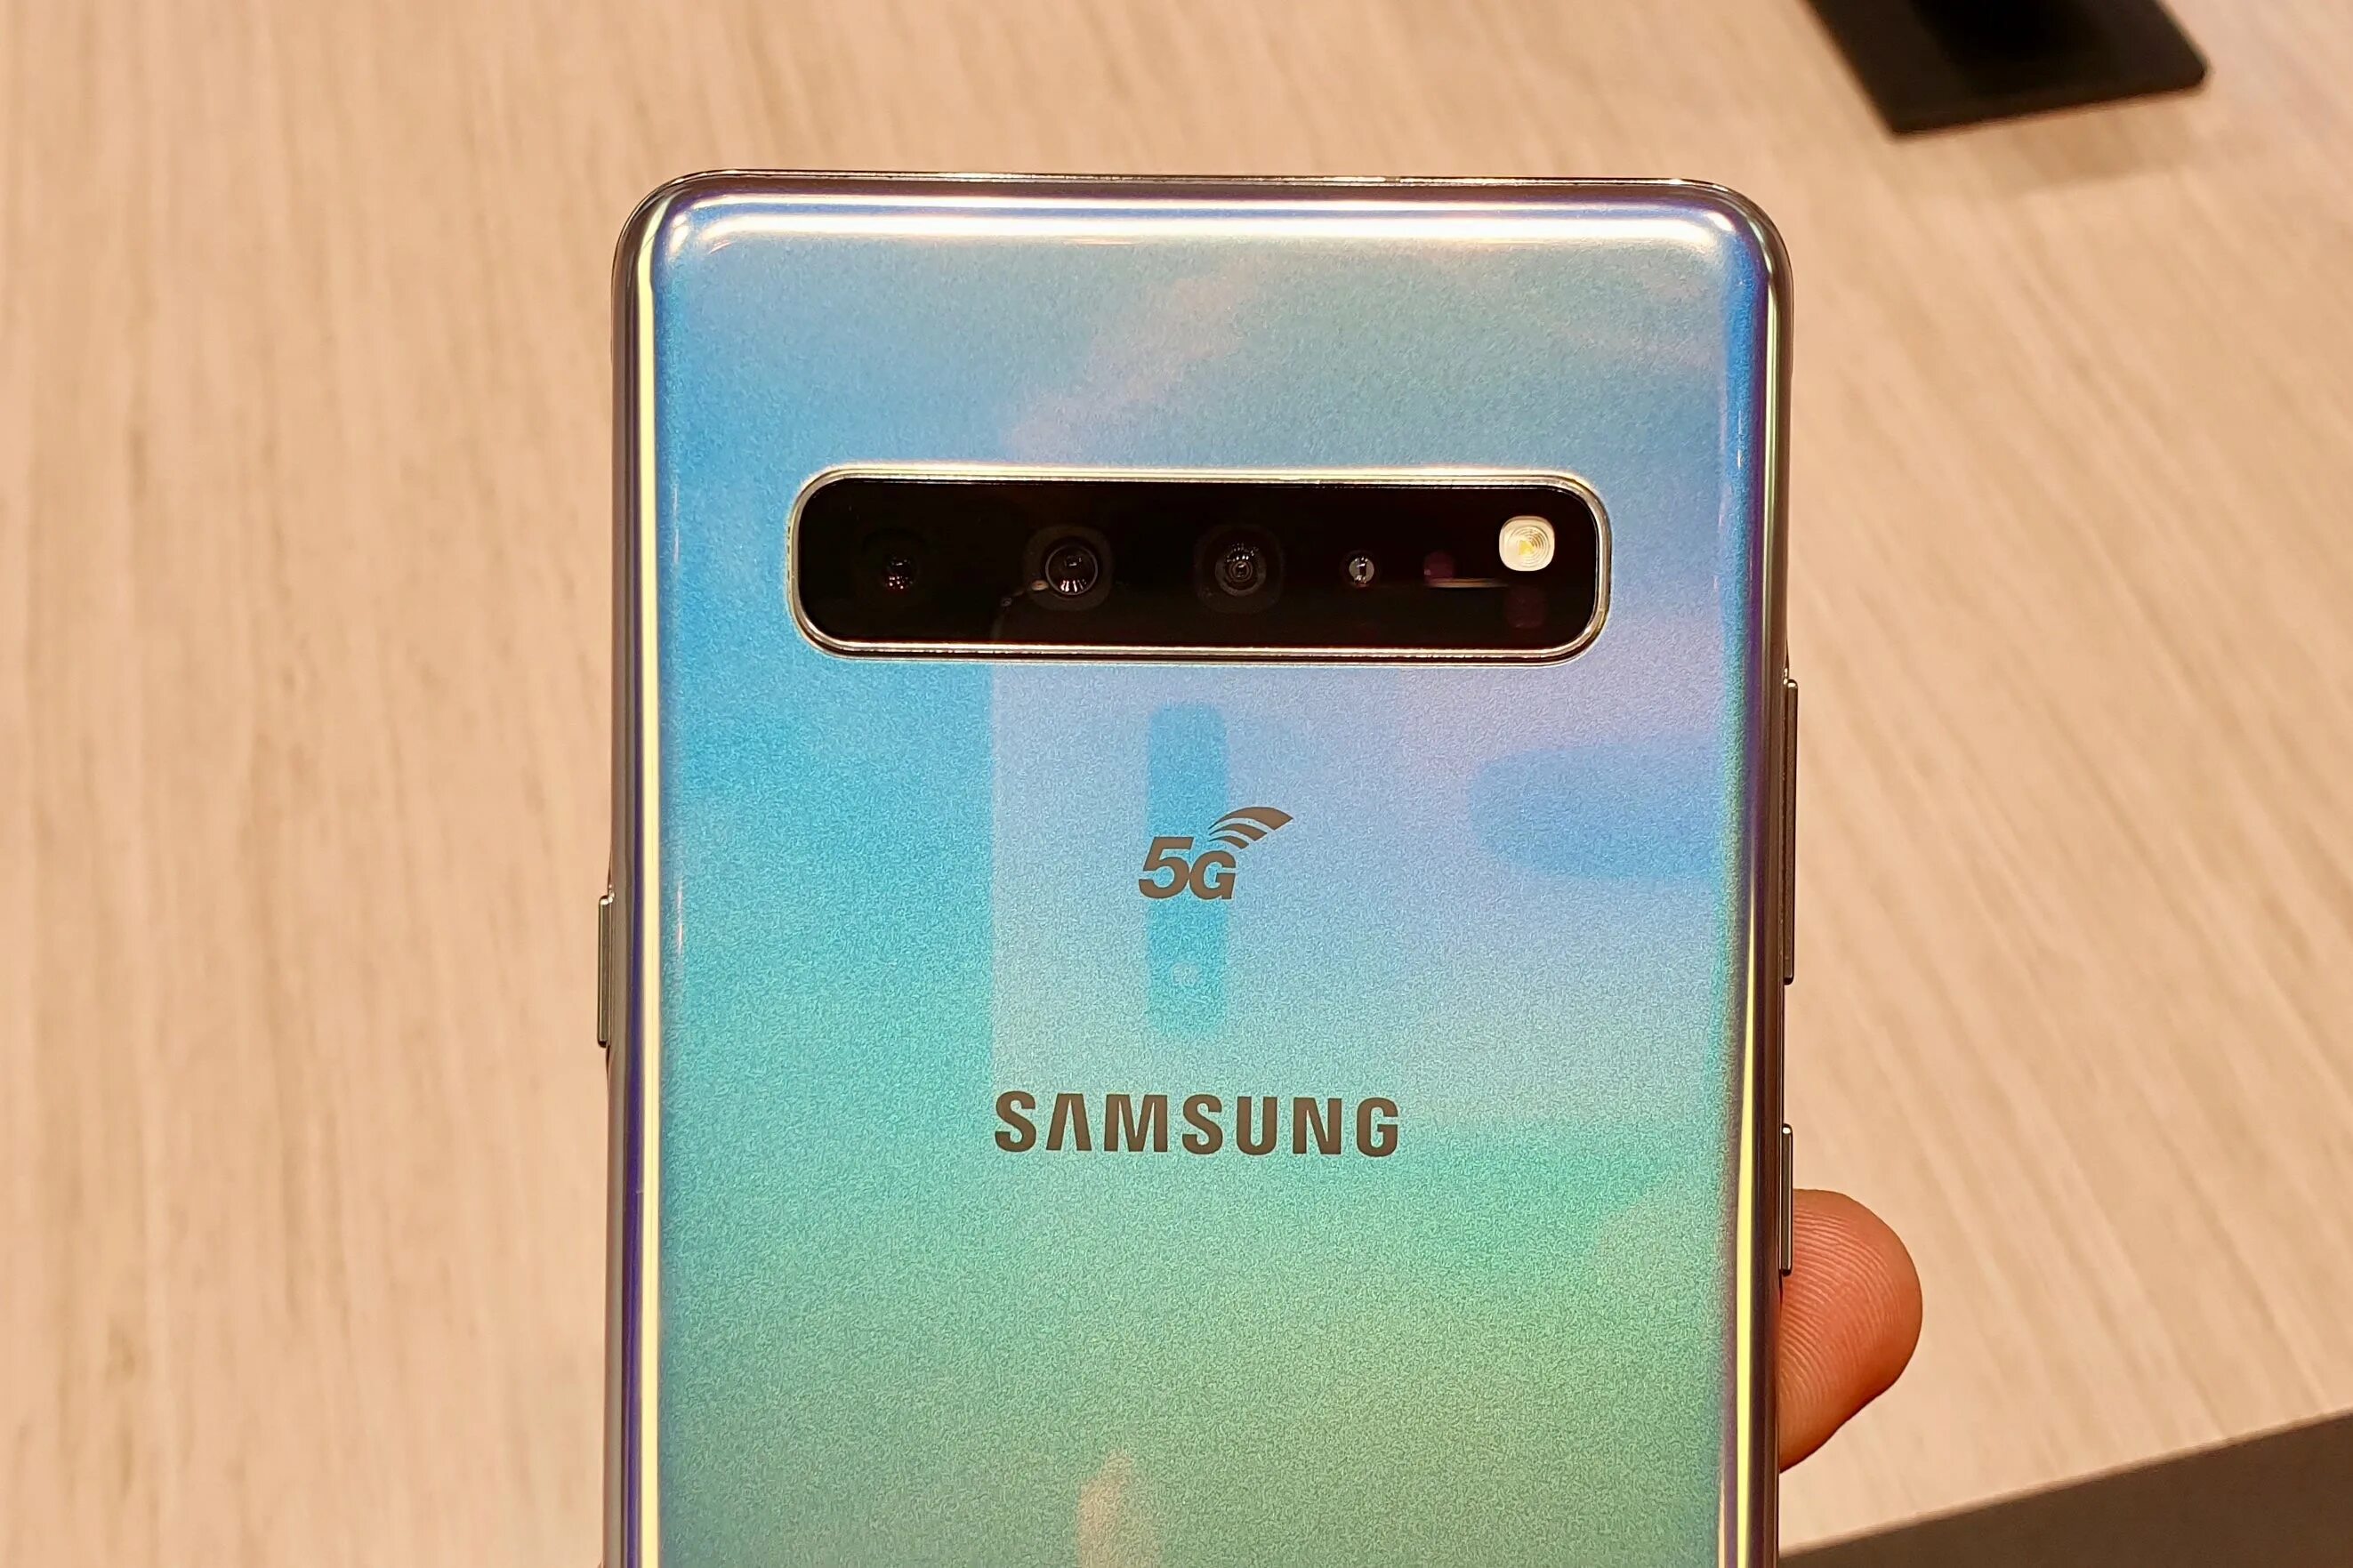 Samsung s 5g. Самсунг галакси s10 5g. Samsung Galaxy s10e 5g. Samsung Galaxy s10+ 5g. Самсунг галакси с 10 5g.